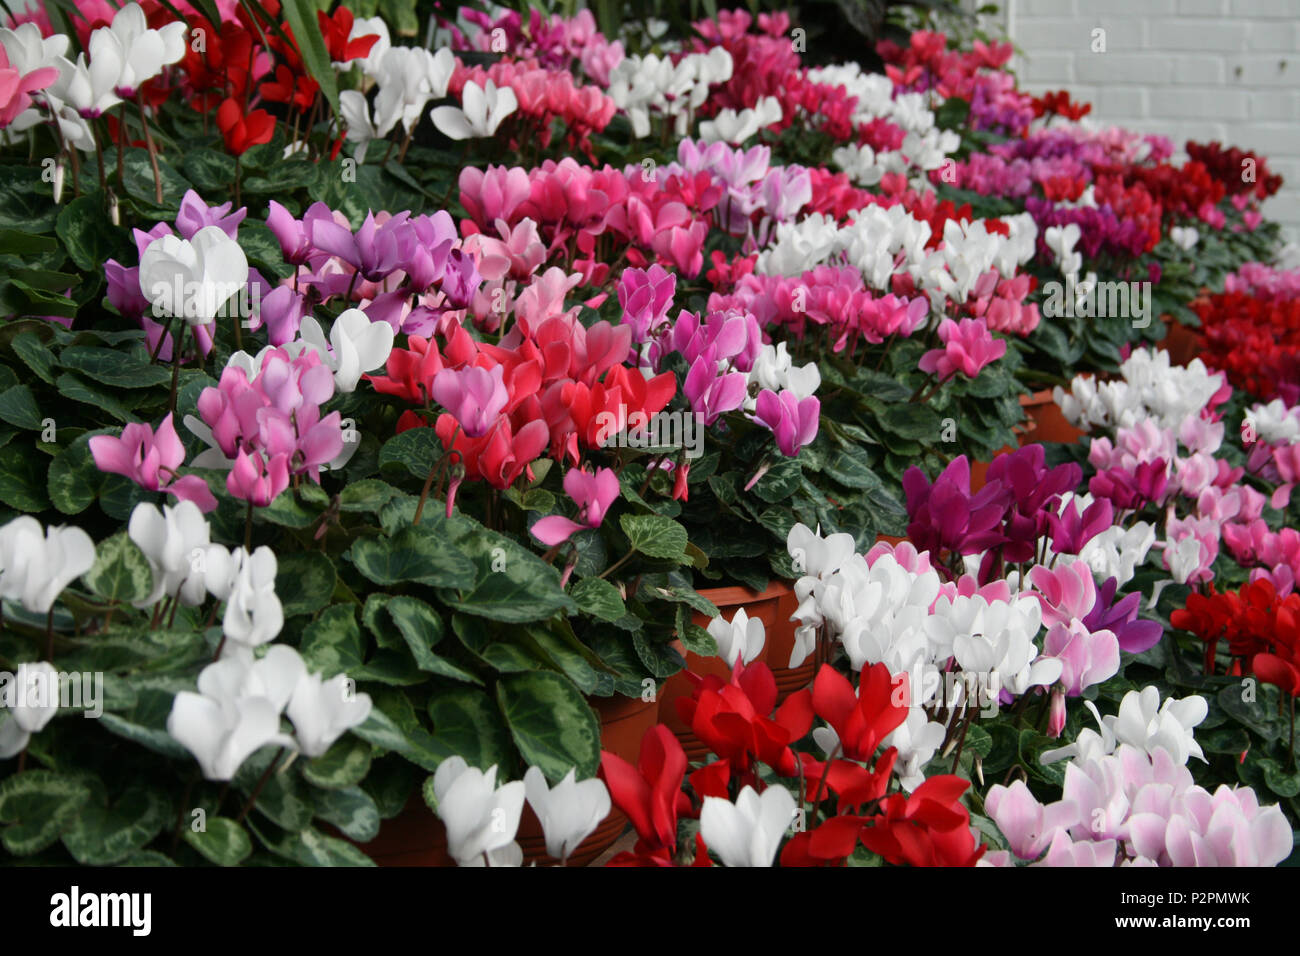 Cyclamen fleurs colorées qui poussent à partir de tubercules et sont appréciés pour leur upswept de pétales et feuilles à motifs. Banque D'Images